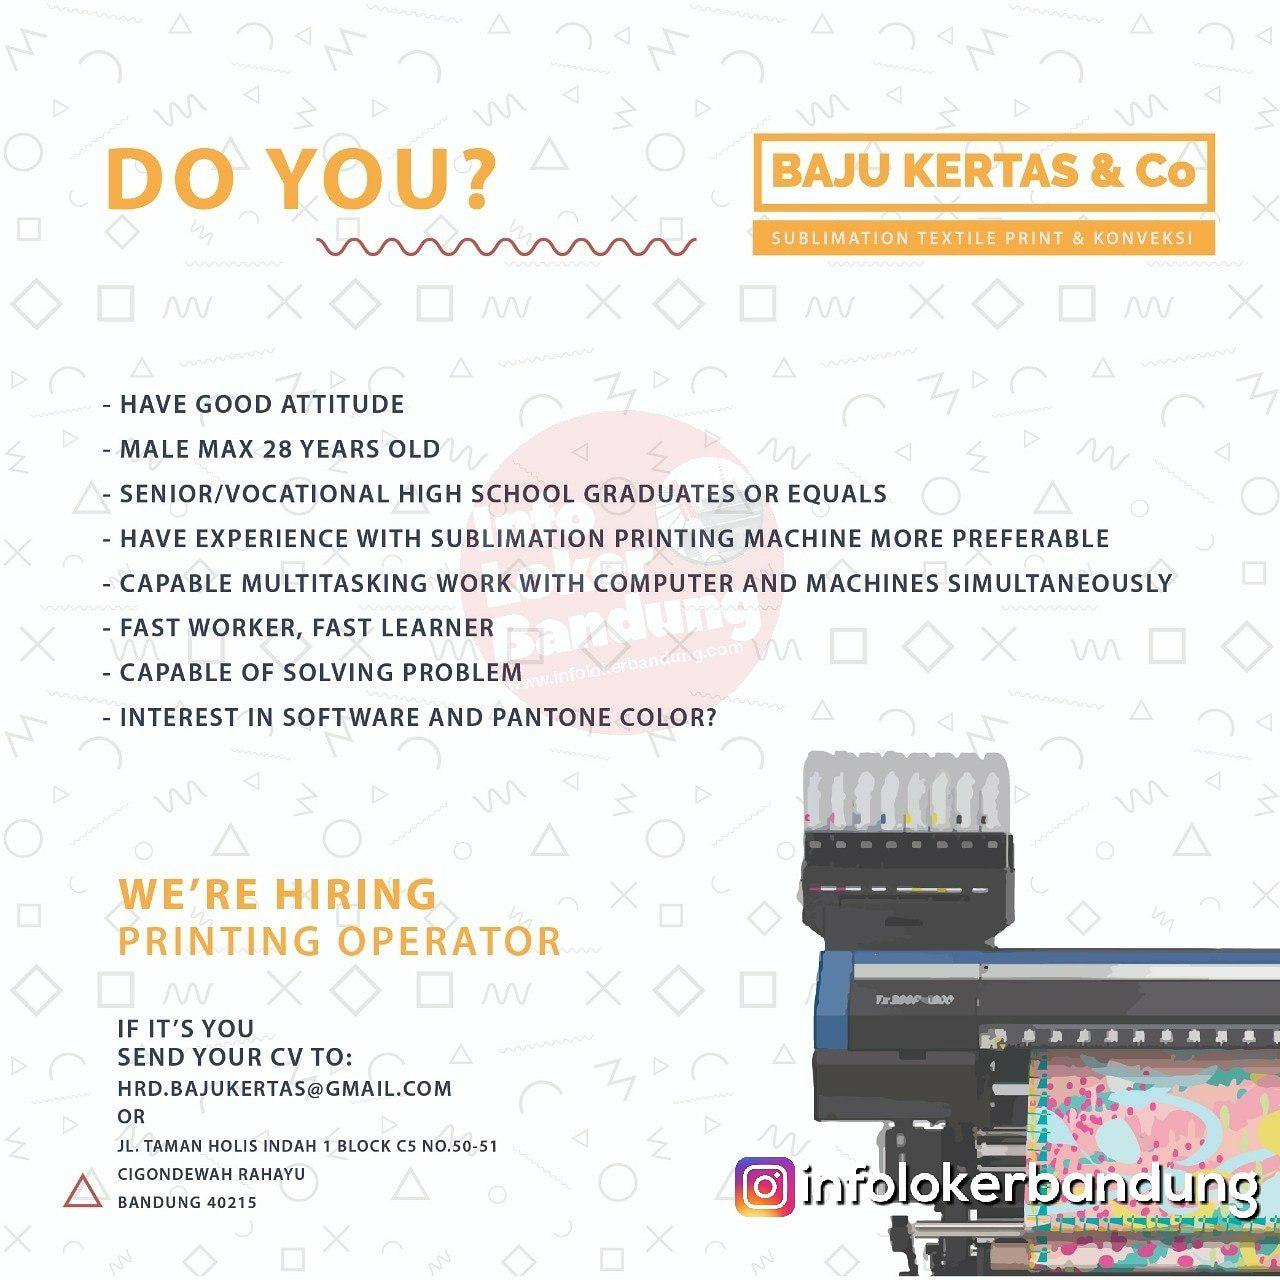 Lowongan Kerja Printing Operator Baju Kertas & Co Bandung Februari 2019